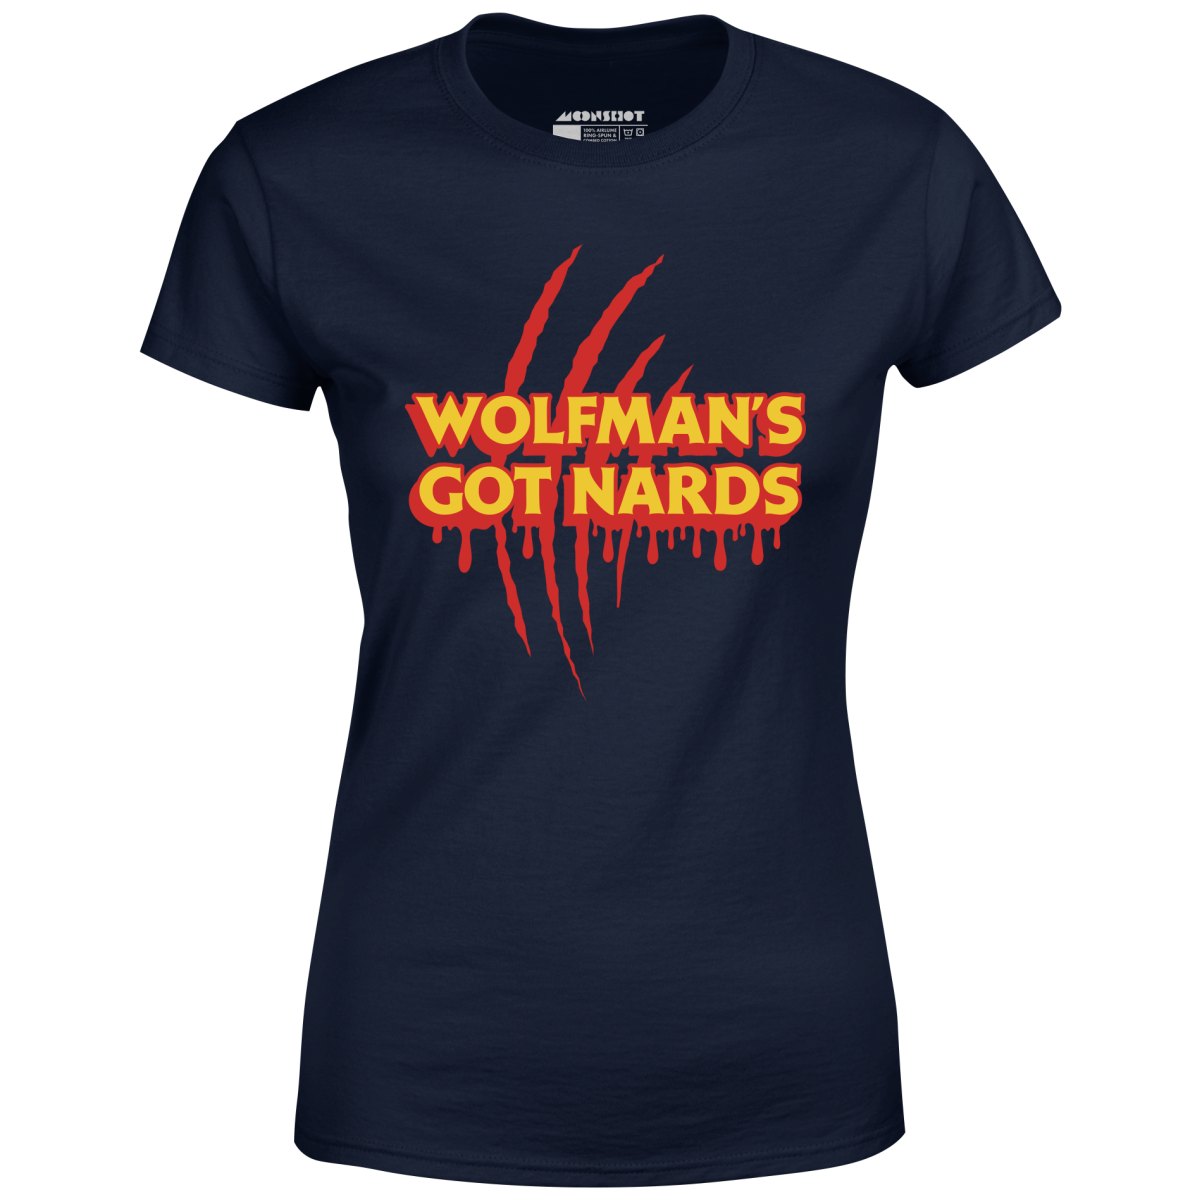 Wolfman's Got Nards - Women's T-Shirt